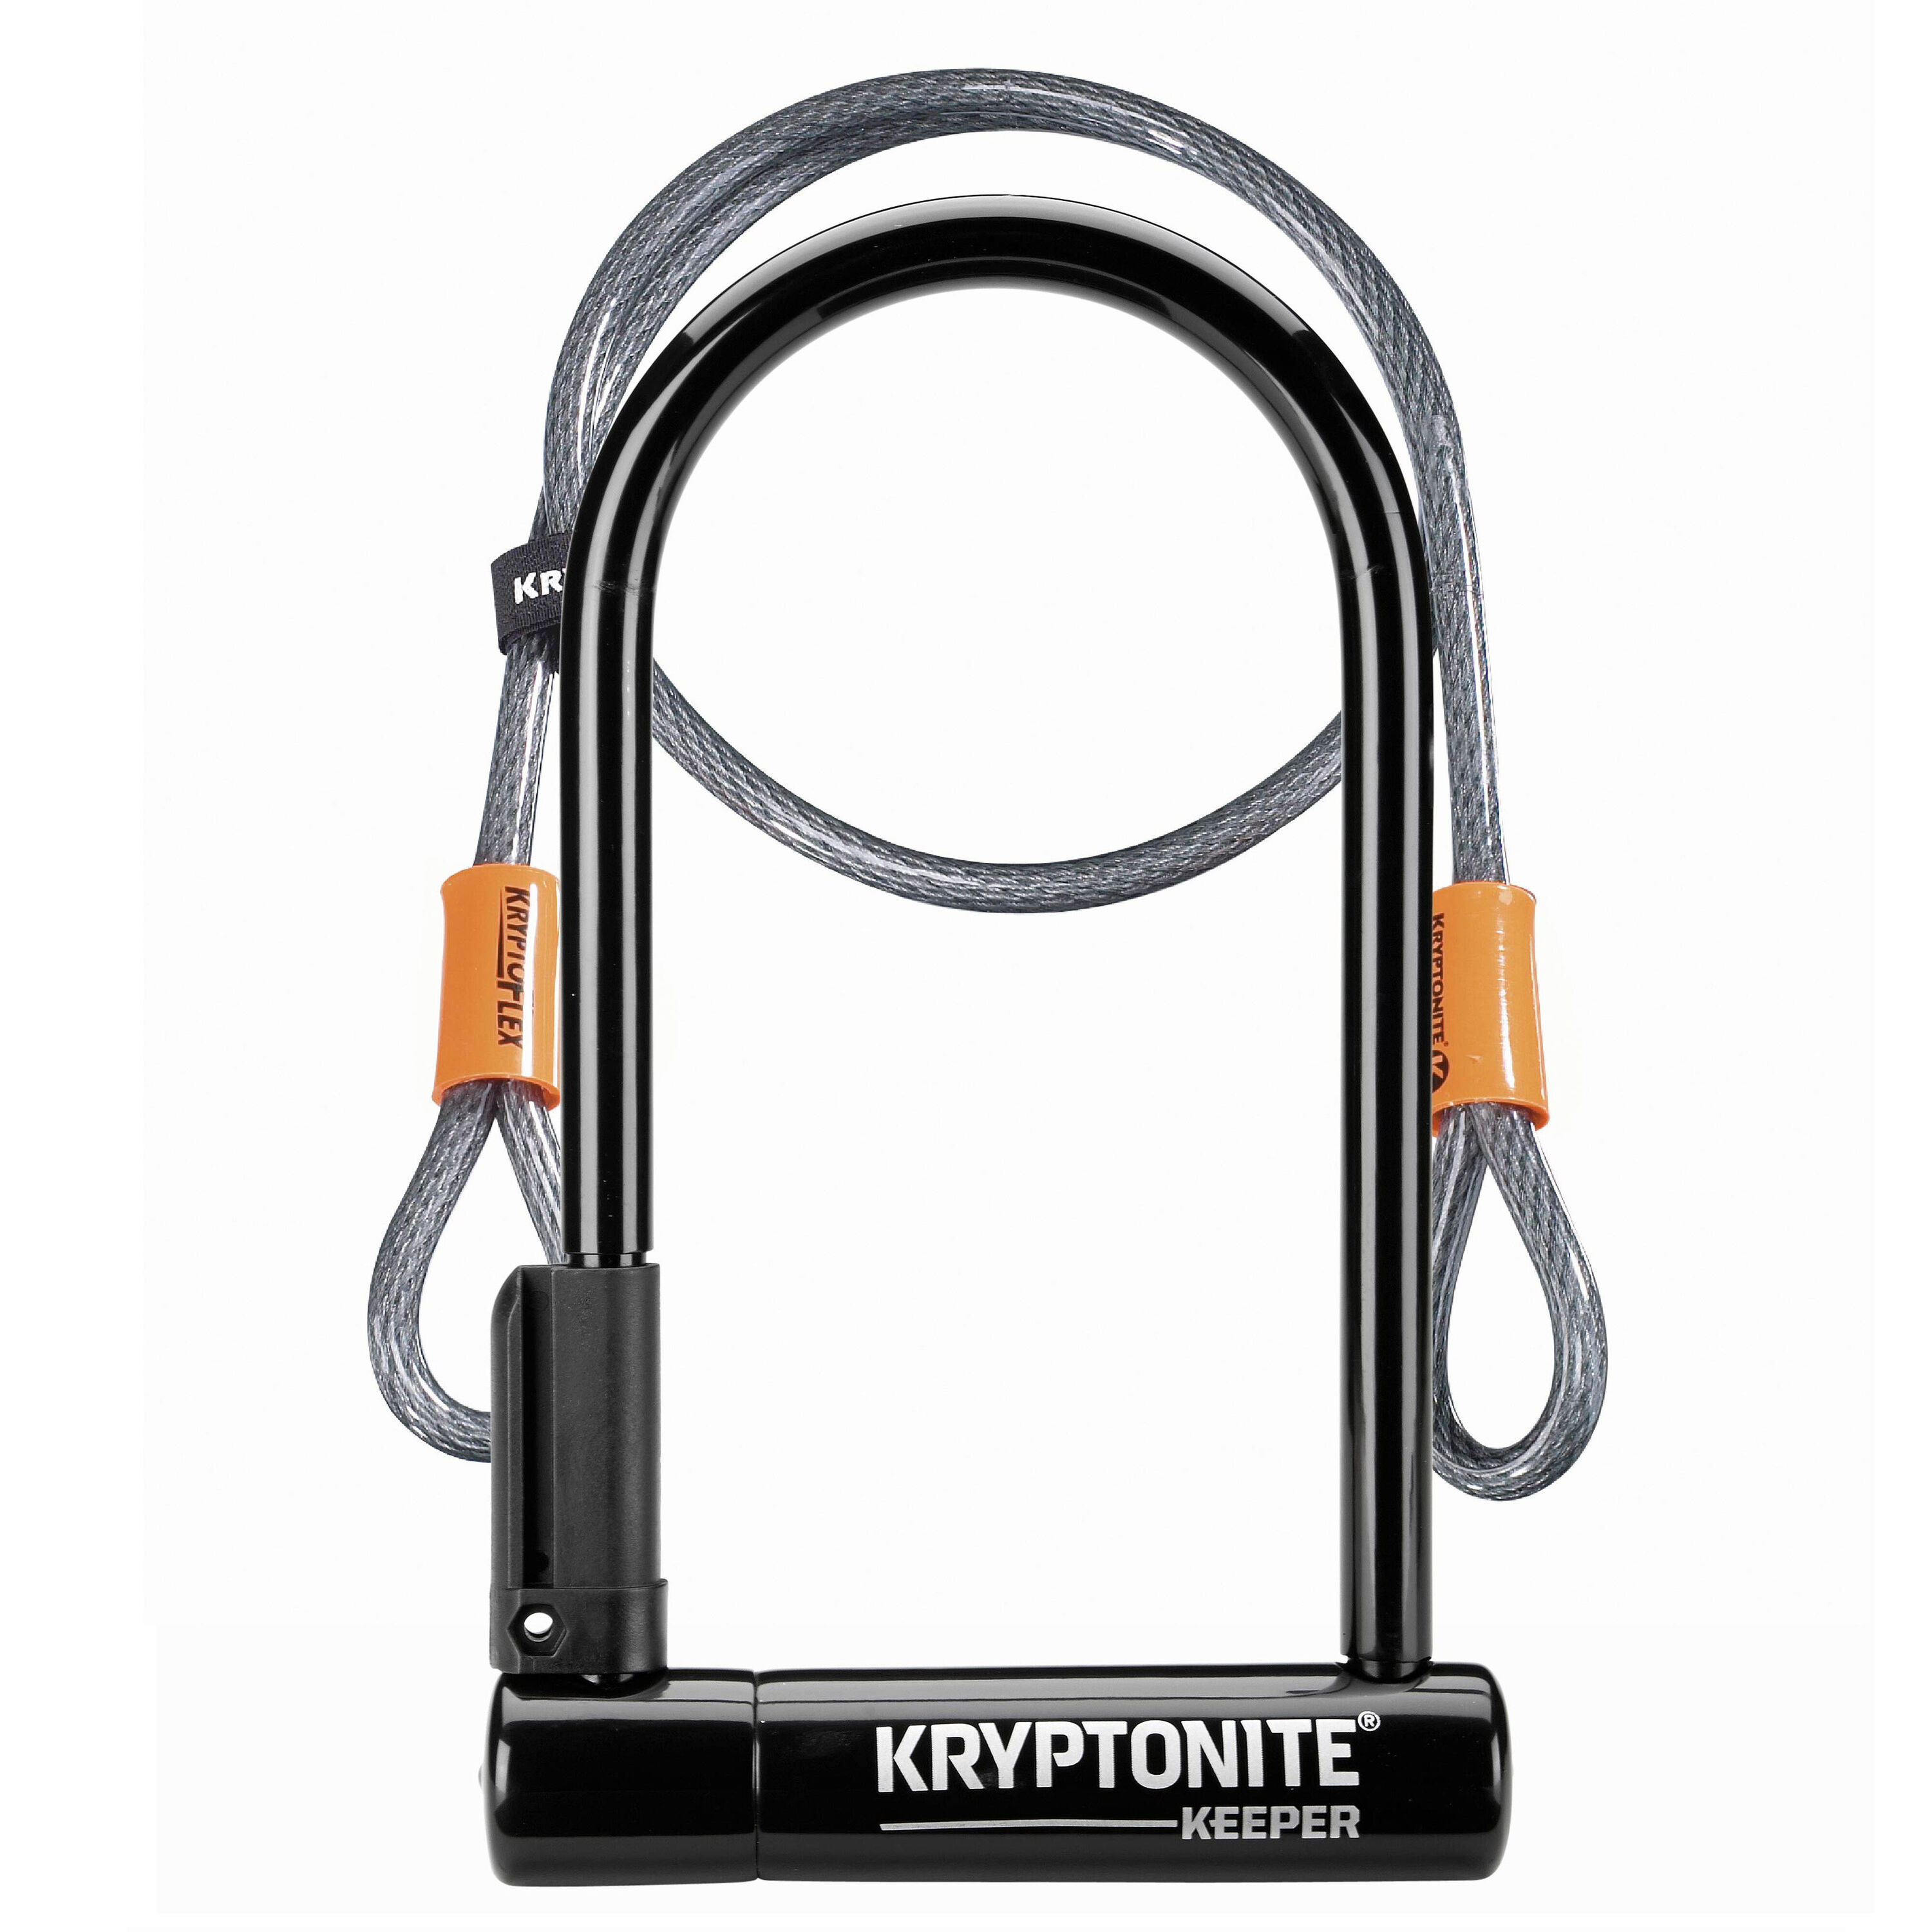 KRYPTONITE Kryptonite Keeper 12 Standard U-Lock with 4 foot Kryptoflex cable